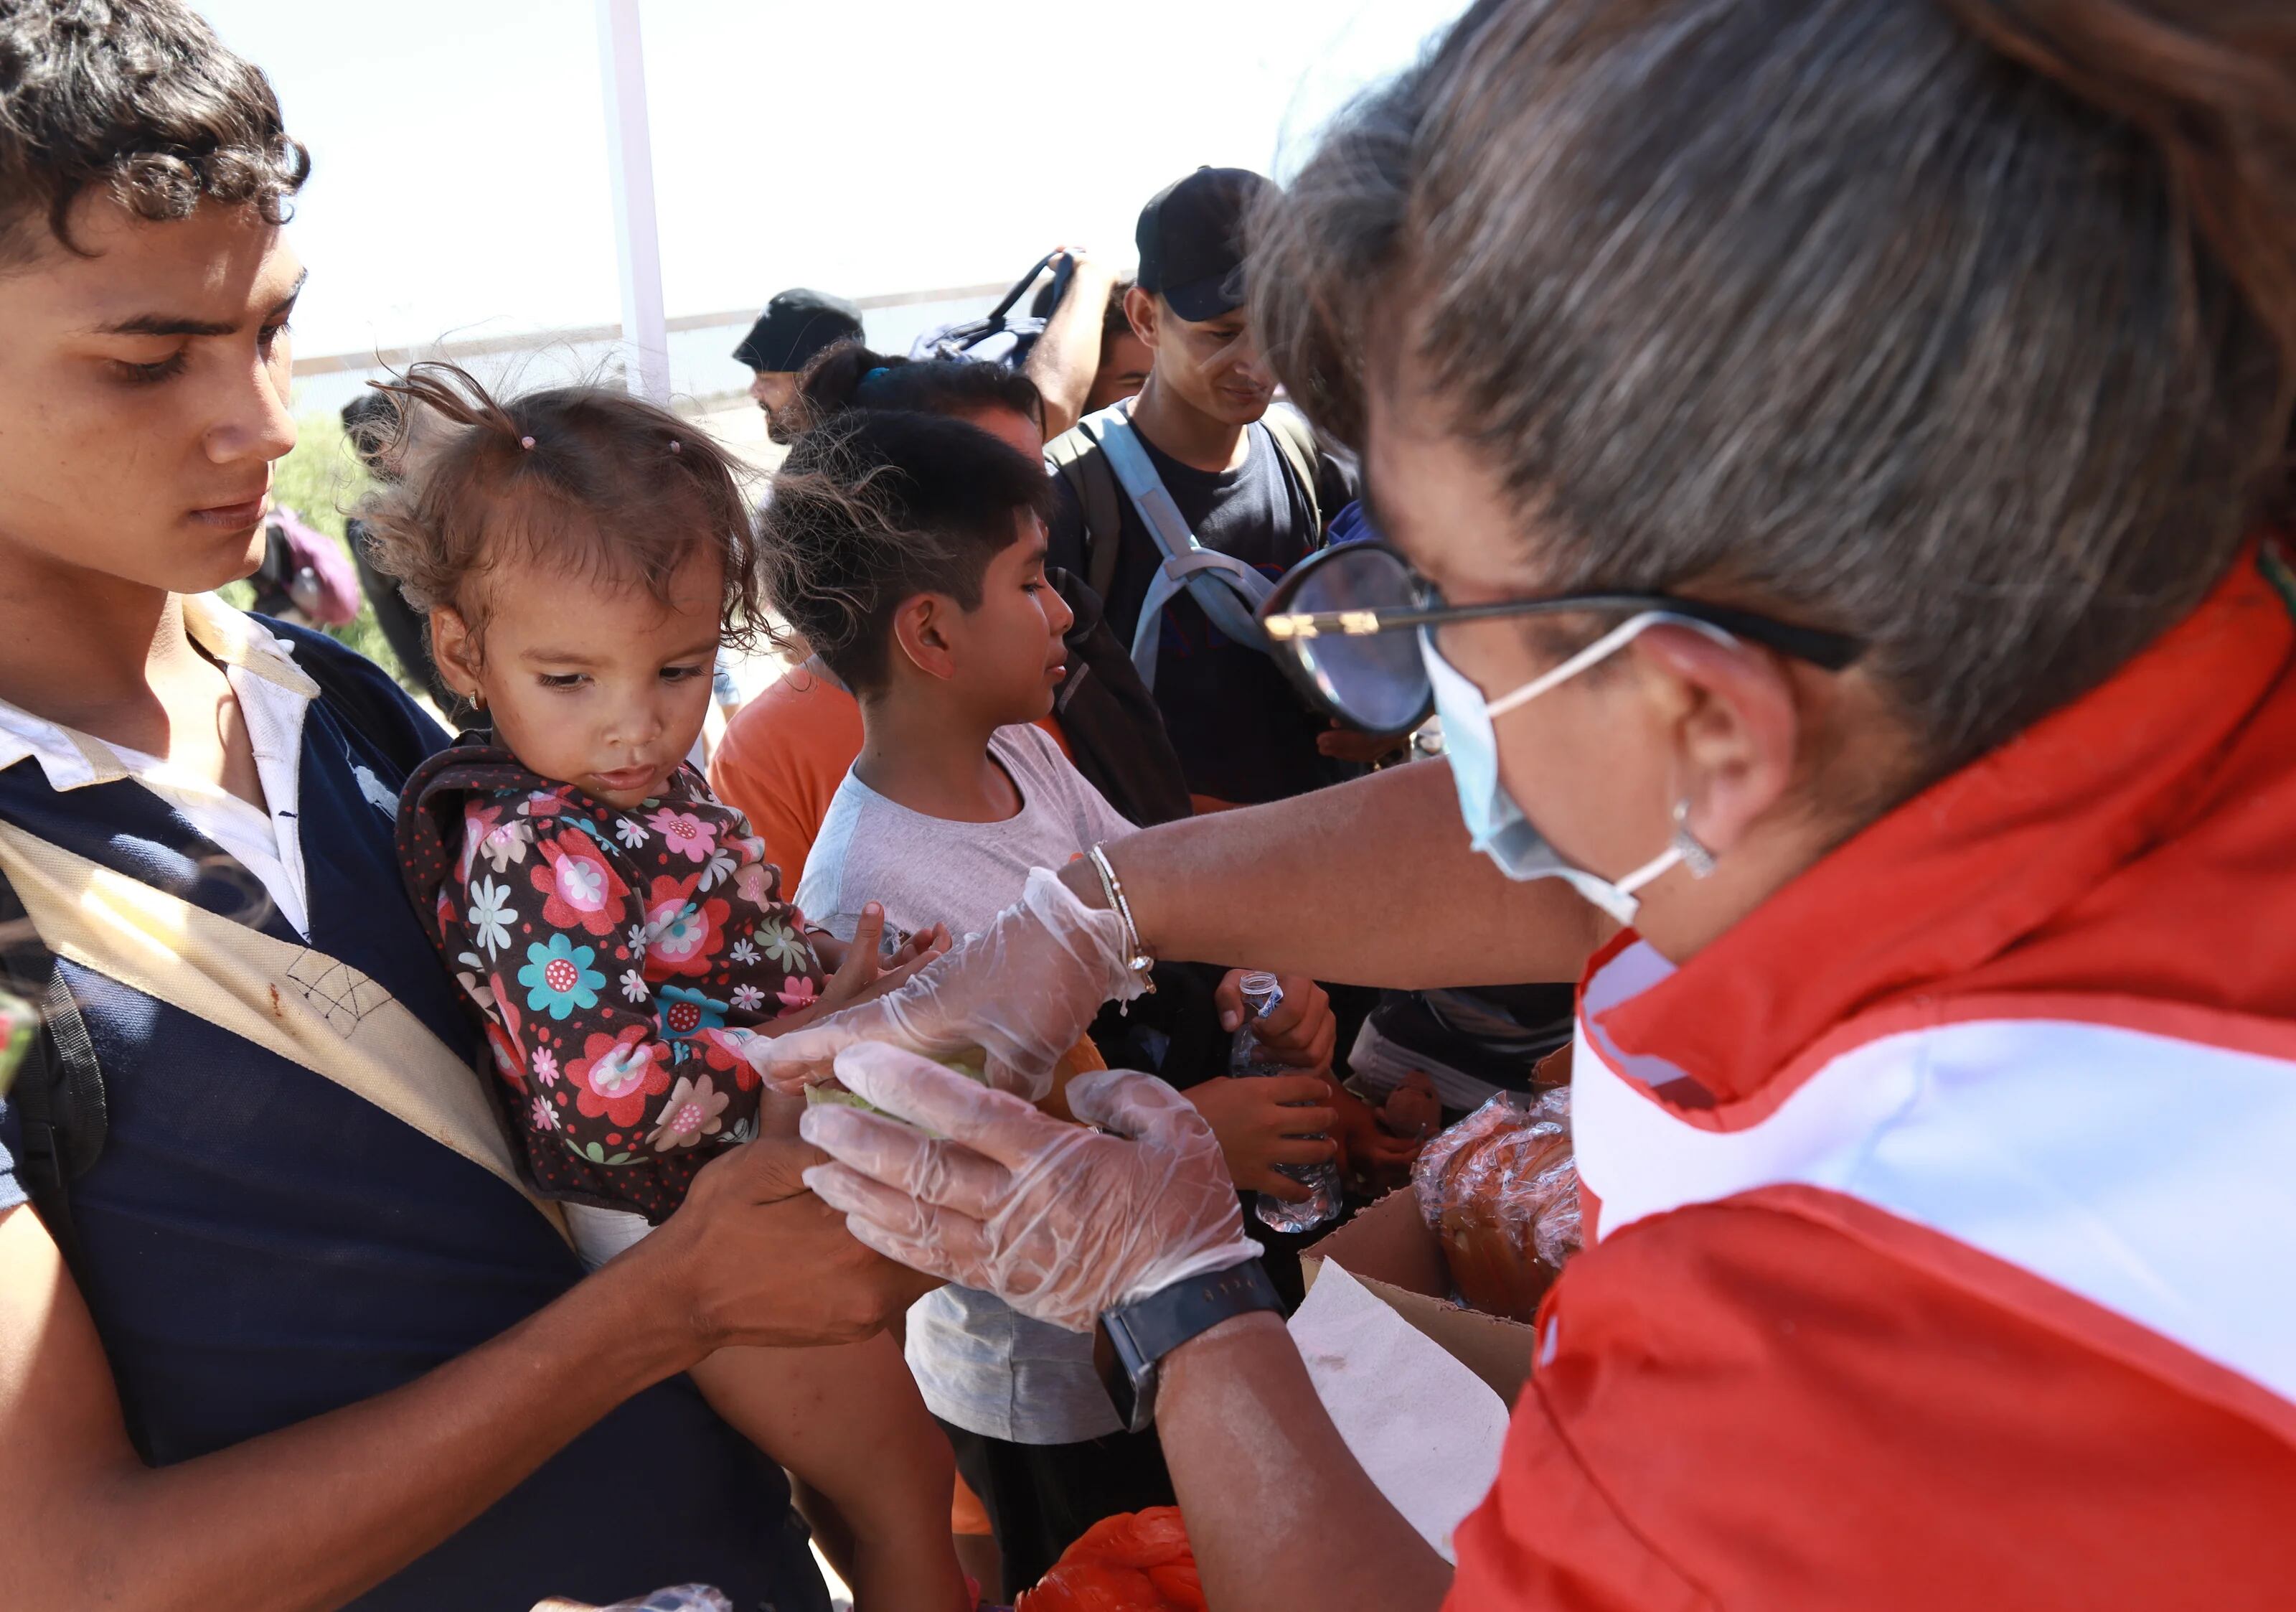 La Cruz Roja intervino por primera vez con ayuda a migrantes en frontera norte de México